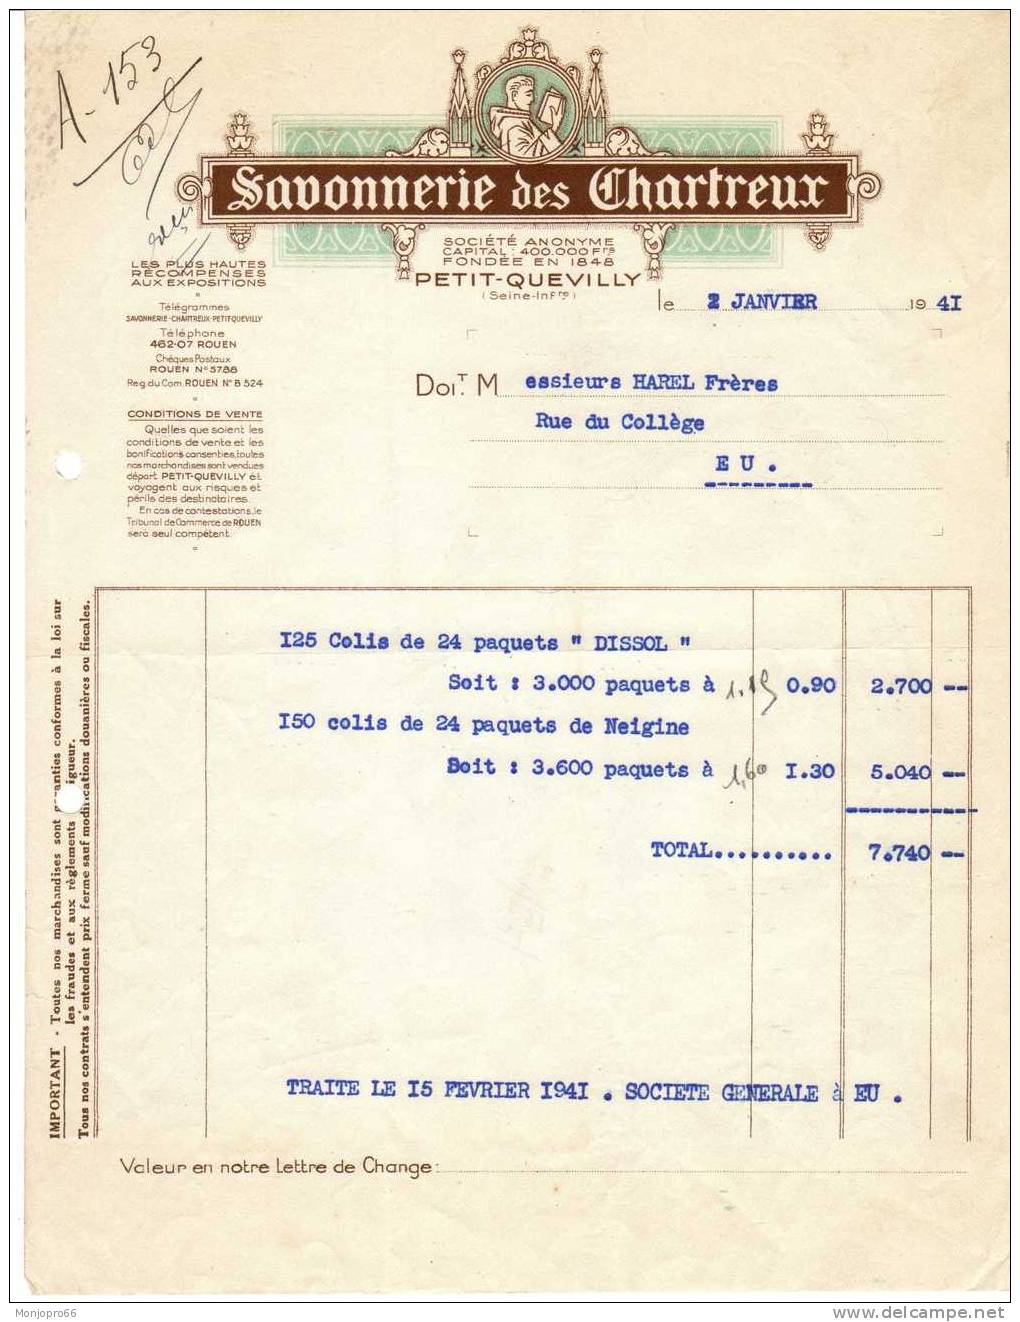 Facture De La Savonnerie Des Chartreux De Petit Quevilly Et De 1941 - Chemist's (drugstore) & Perfumery